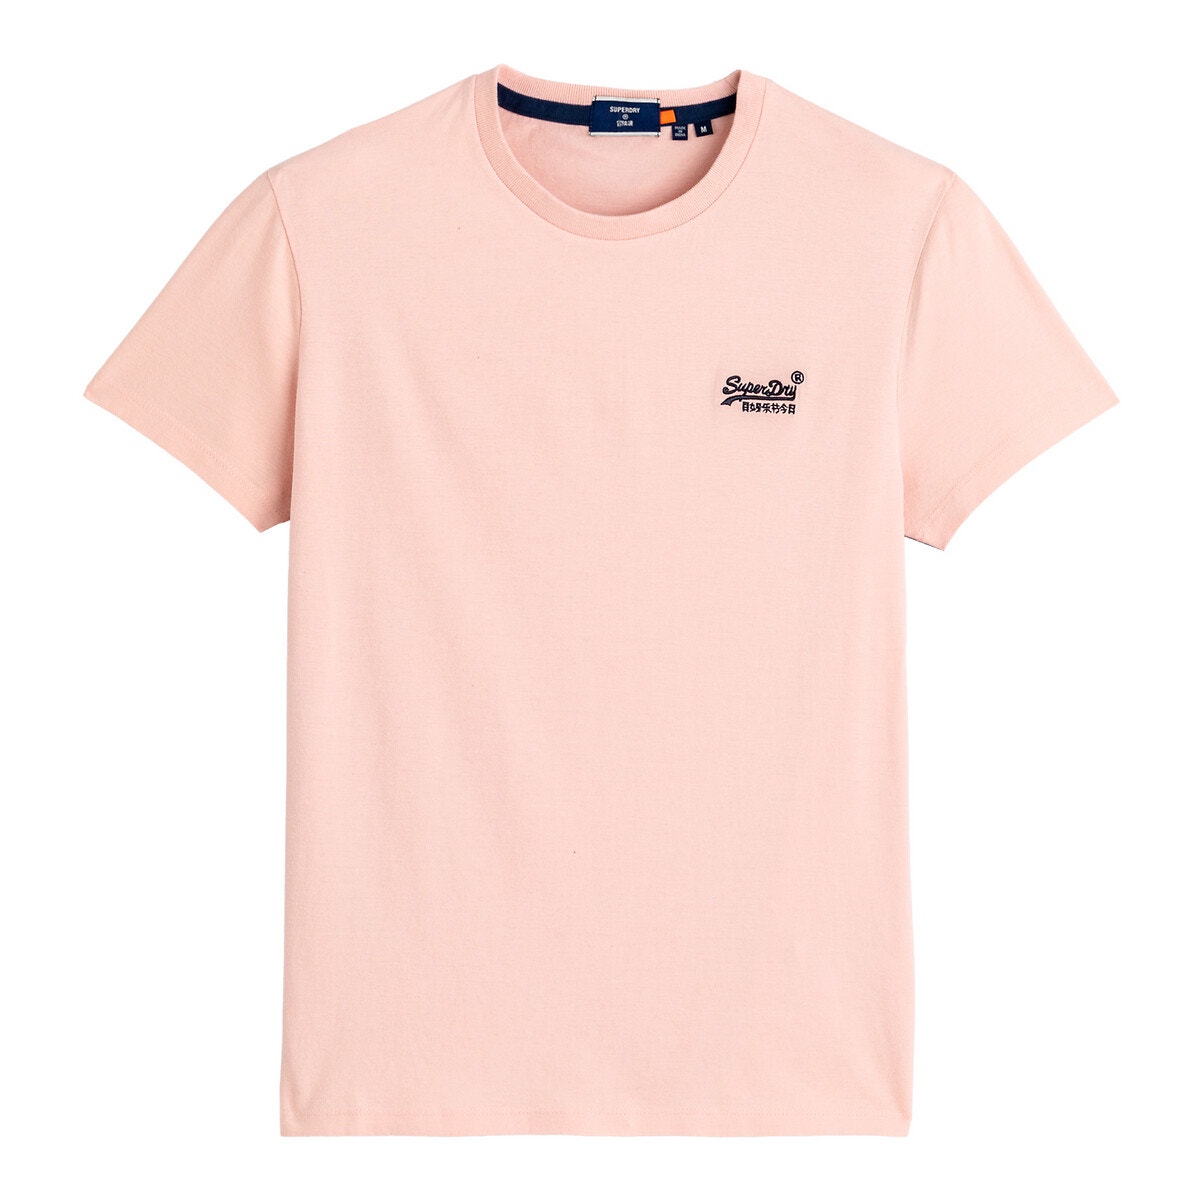 Κοντομάνικο T-shirt με στρογγυλή λαιμόκοψη, Orange Label Vintage